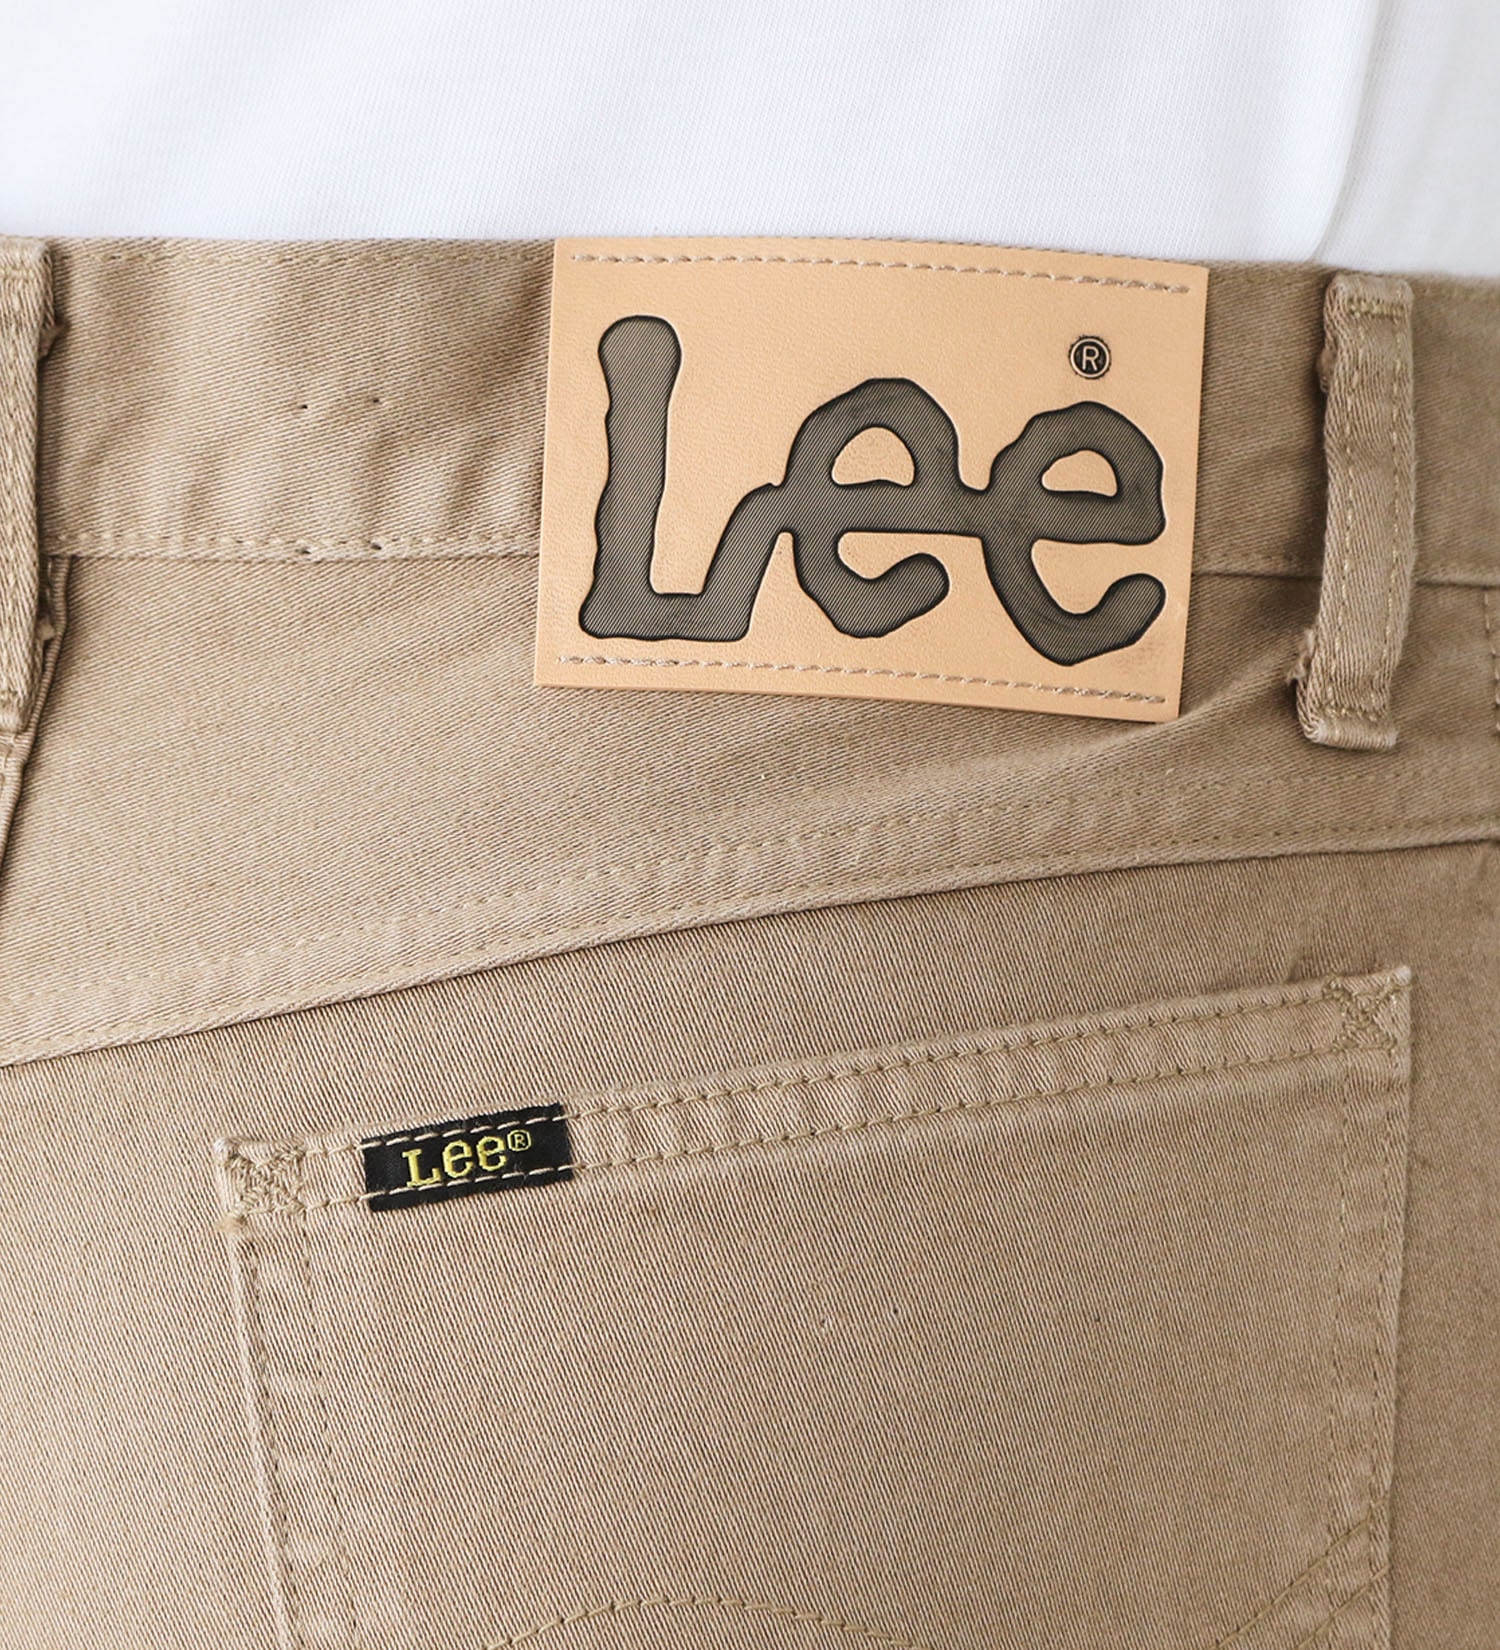 Lee(リー)のAMERICAN STANDARD 201ウエスターナー サテン ストレート|パンツ/デニムパンツ/メンズ|ライトブラウン